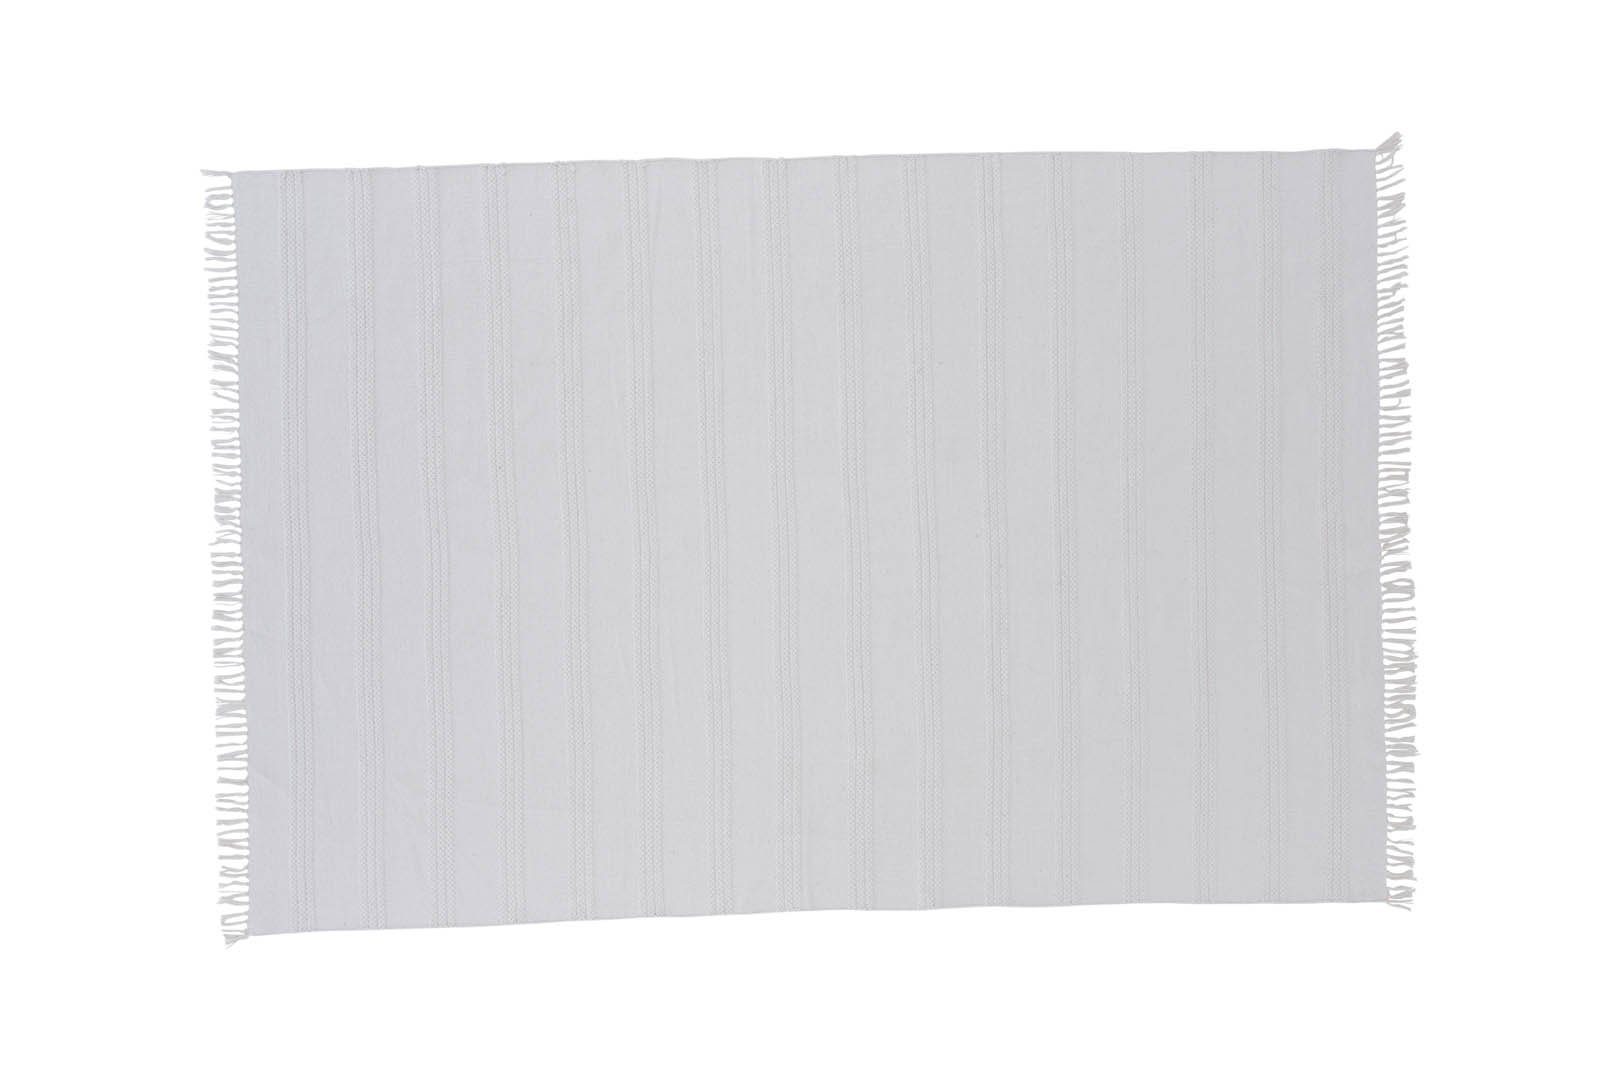 Teppich Nico Teppich 230x160 cm Baumwolle offwhite., ebuy24, Höhe: 1 mm